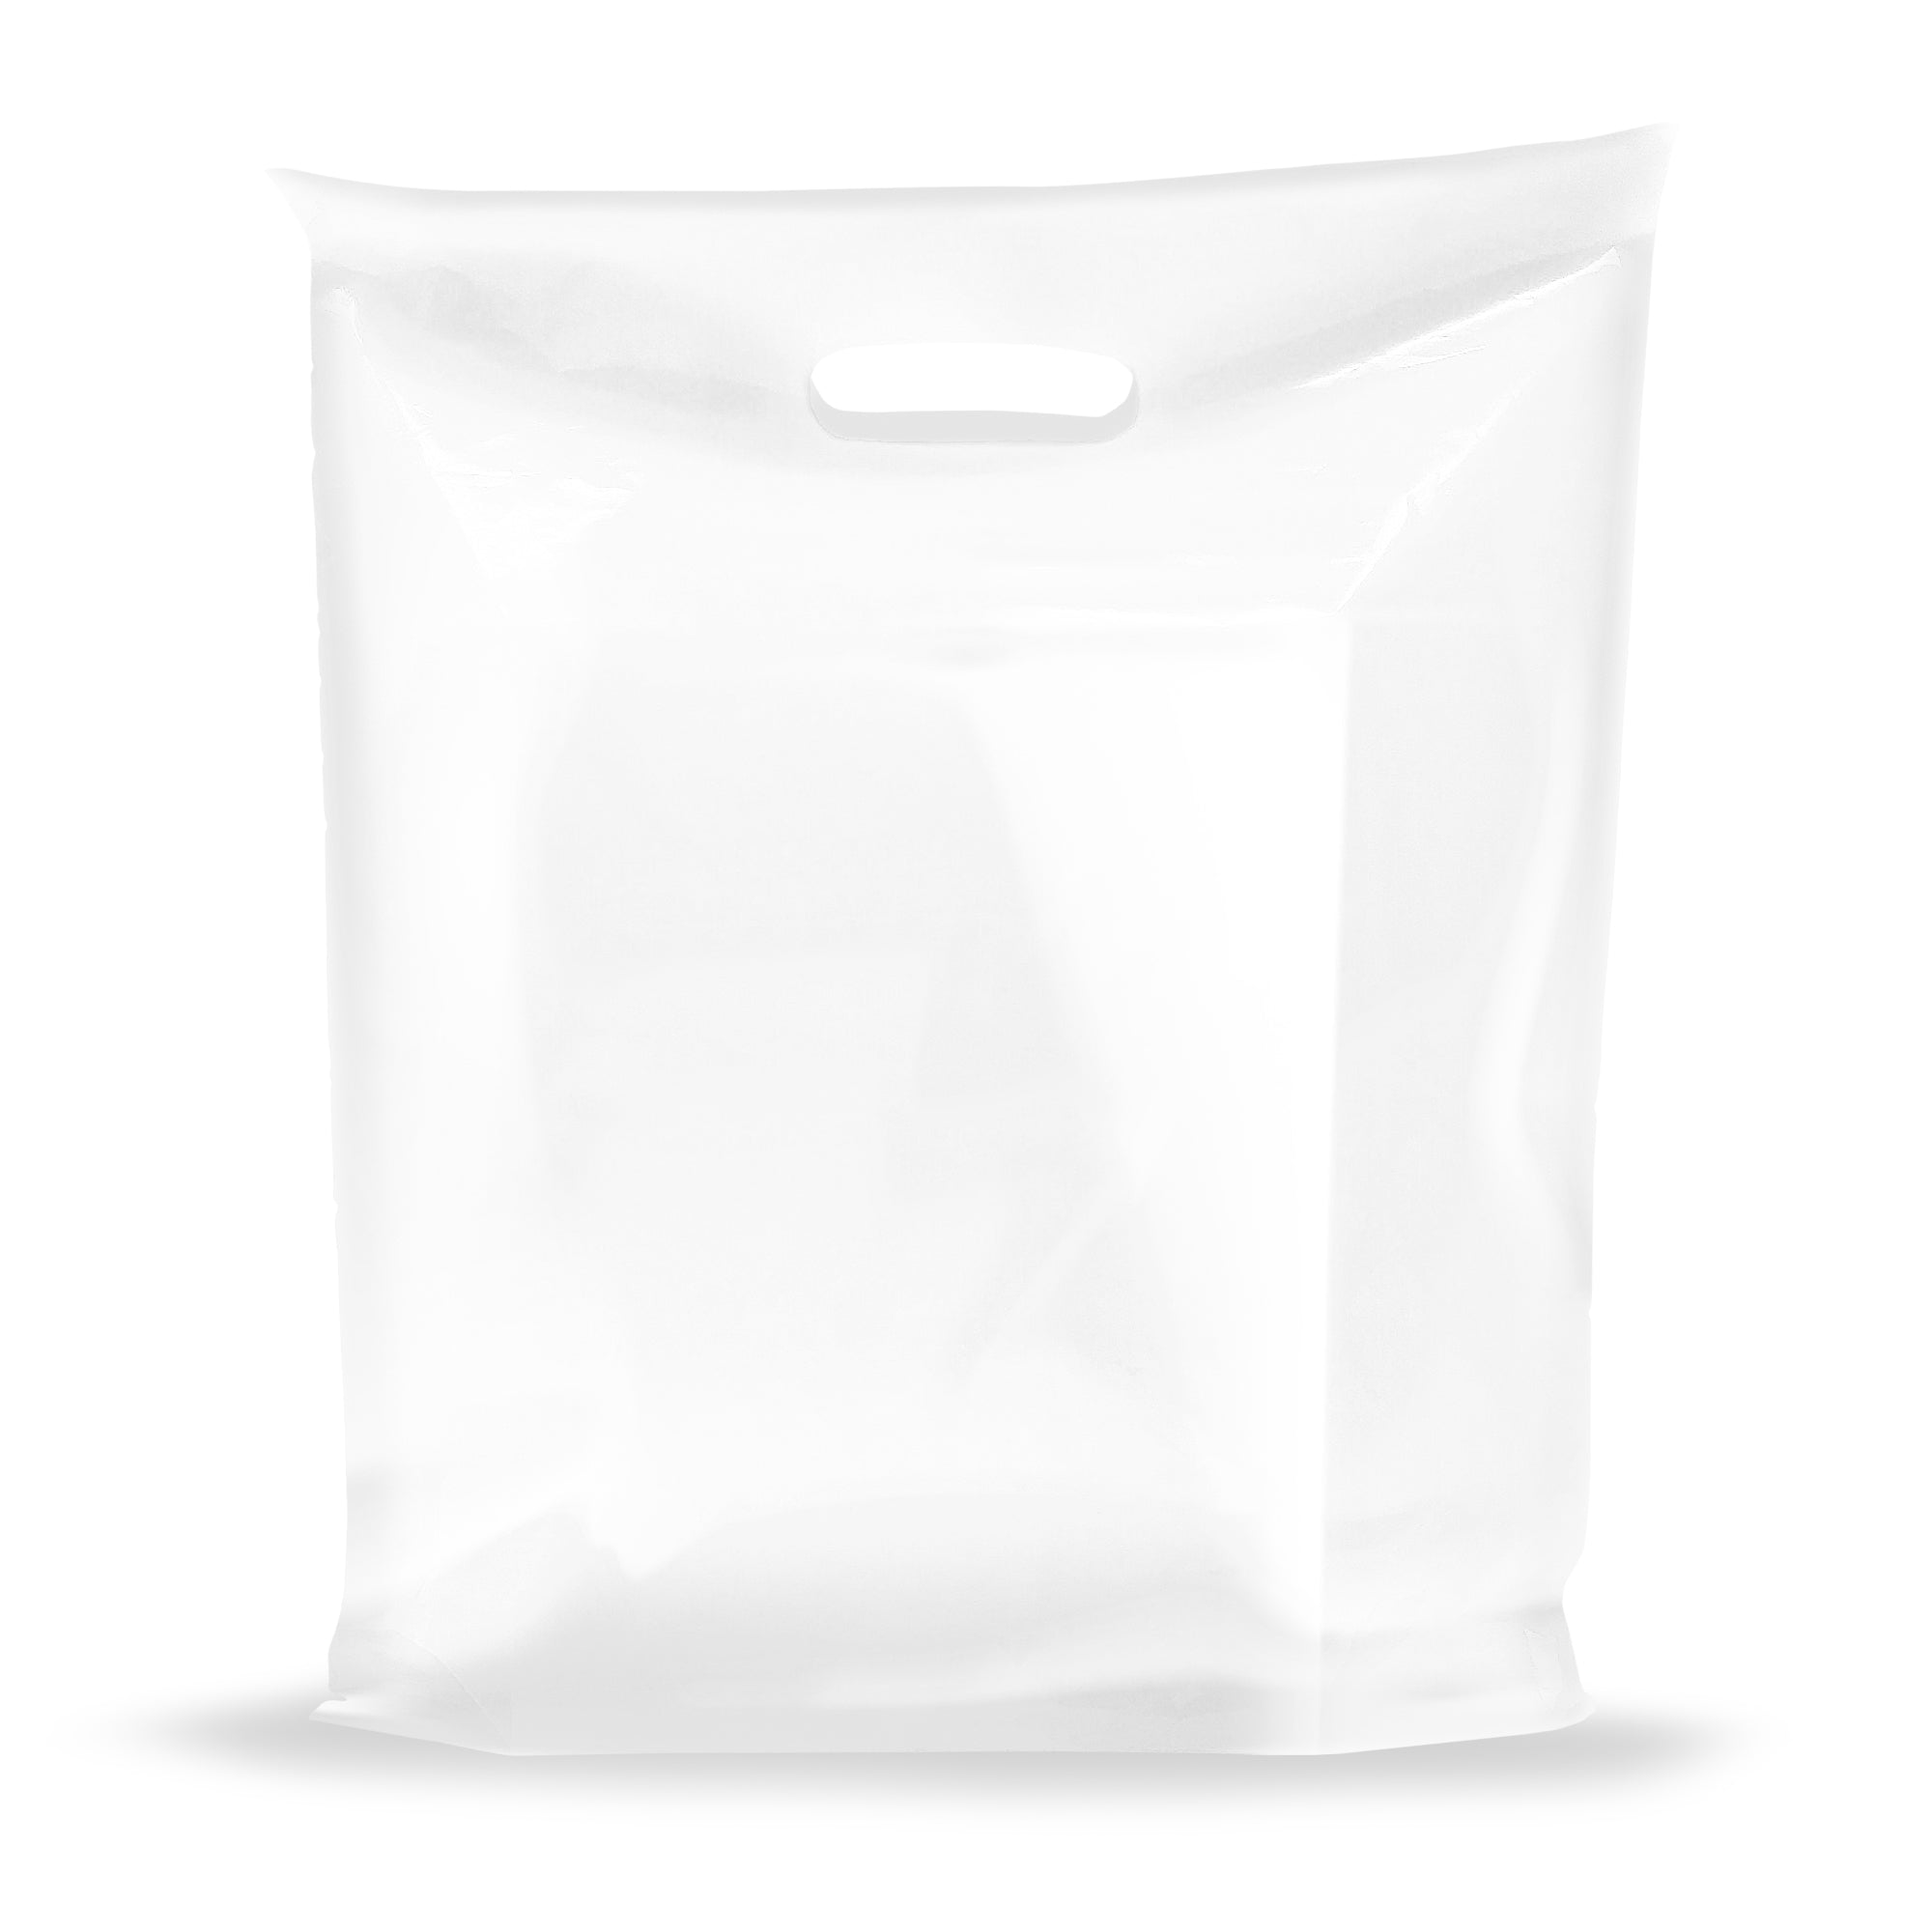 Clear Tote Vinyl Plastic Bag Shopper Acrylic Handles Transparent Carrier  Pack M